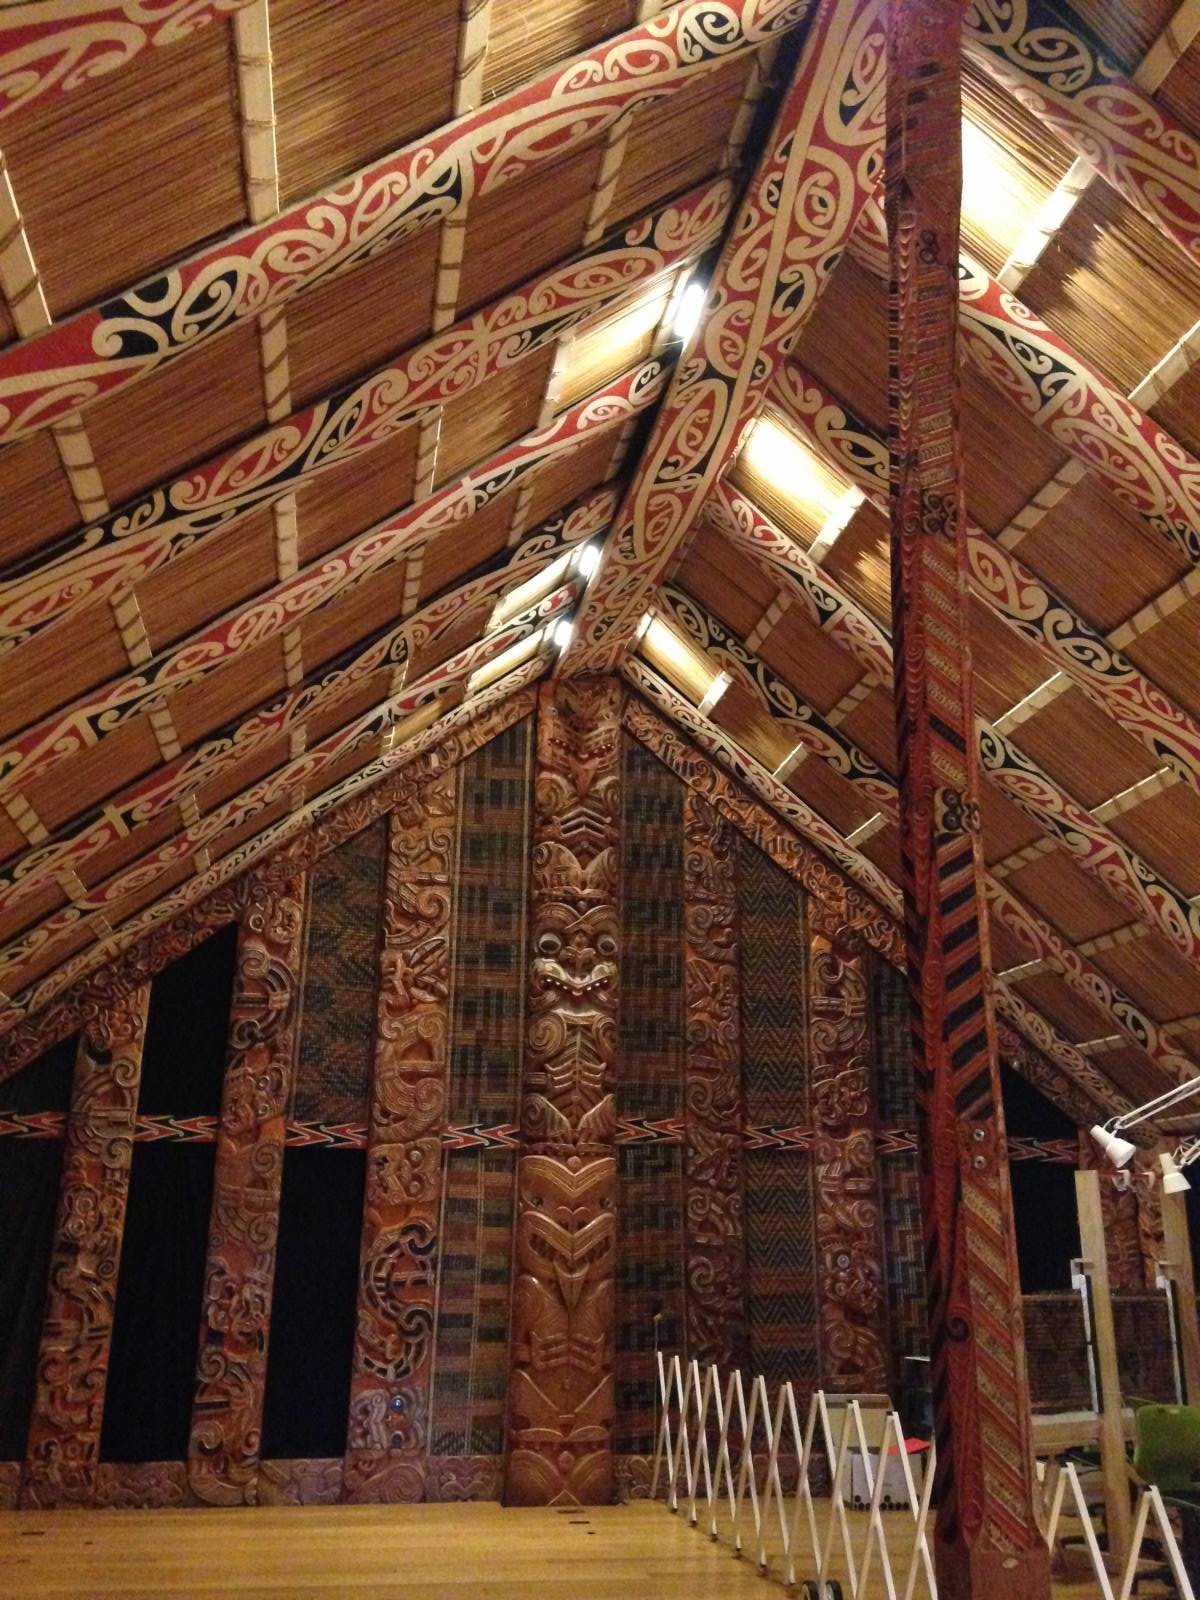 A peek inside a Maori meeting house in the Auckland War Memorial Museum!